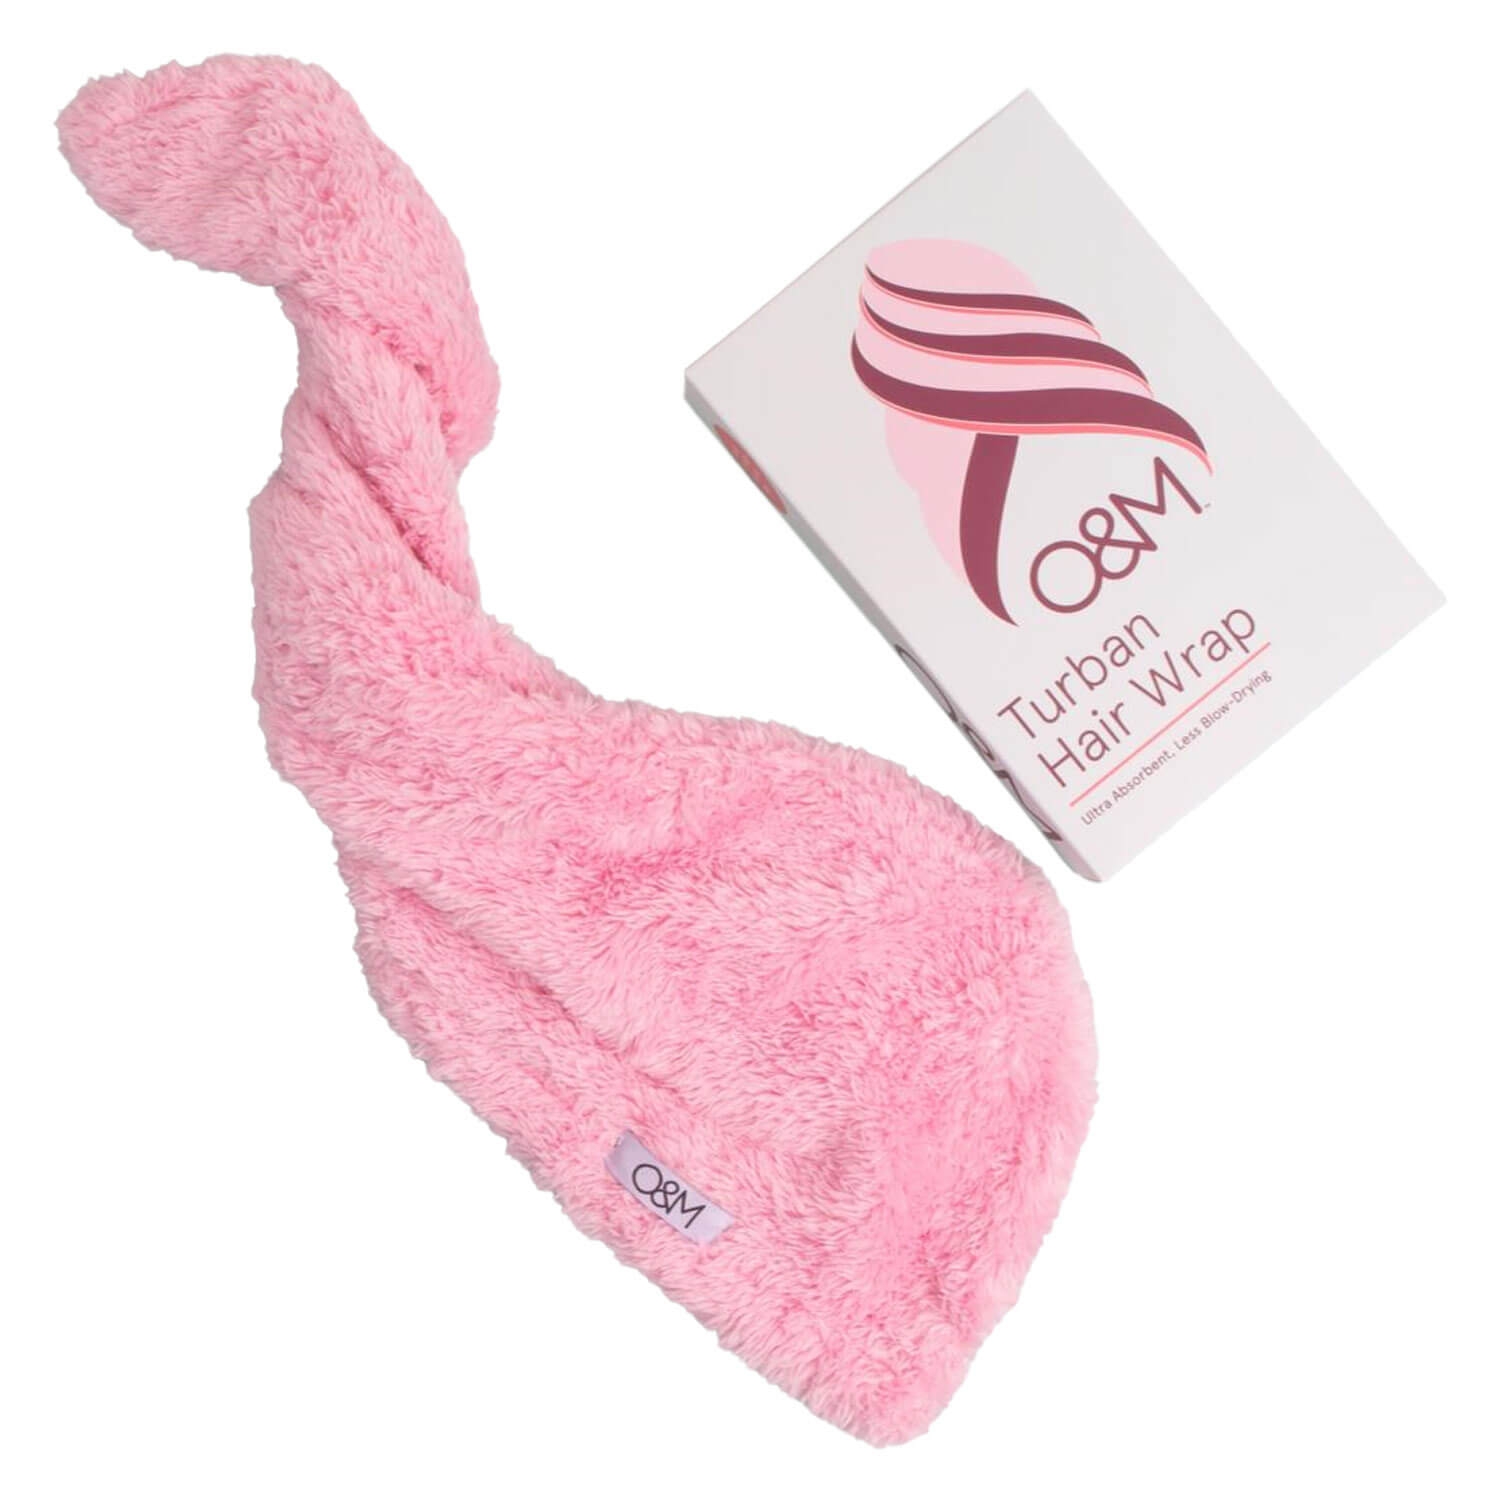 Produktbild von O&M Tools - Turban Hair Wrap Pink